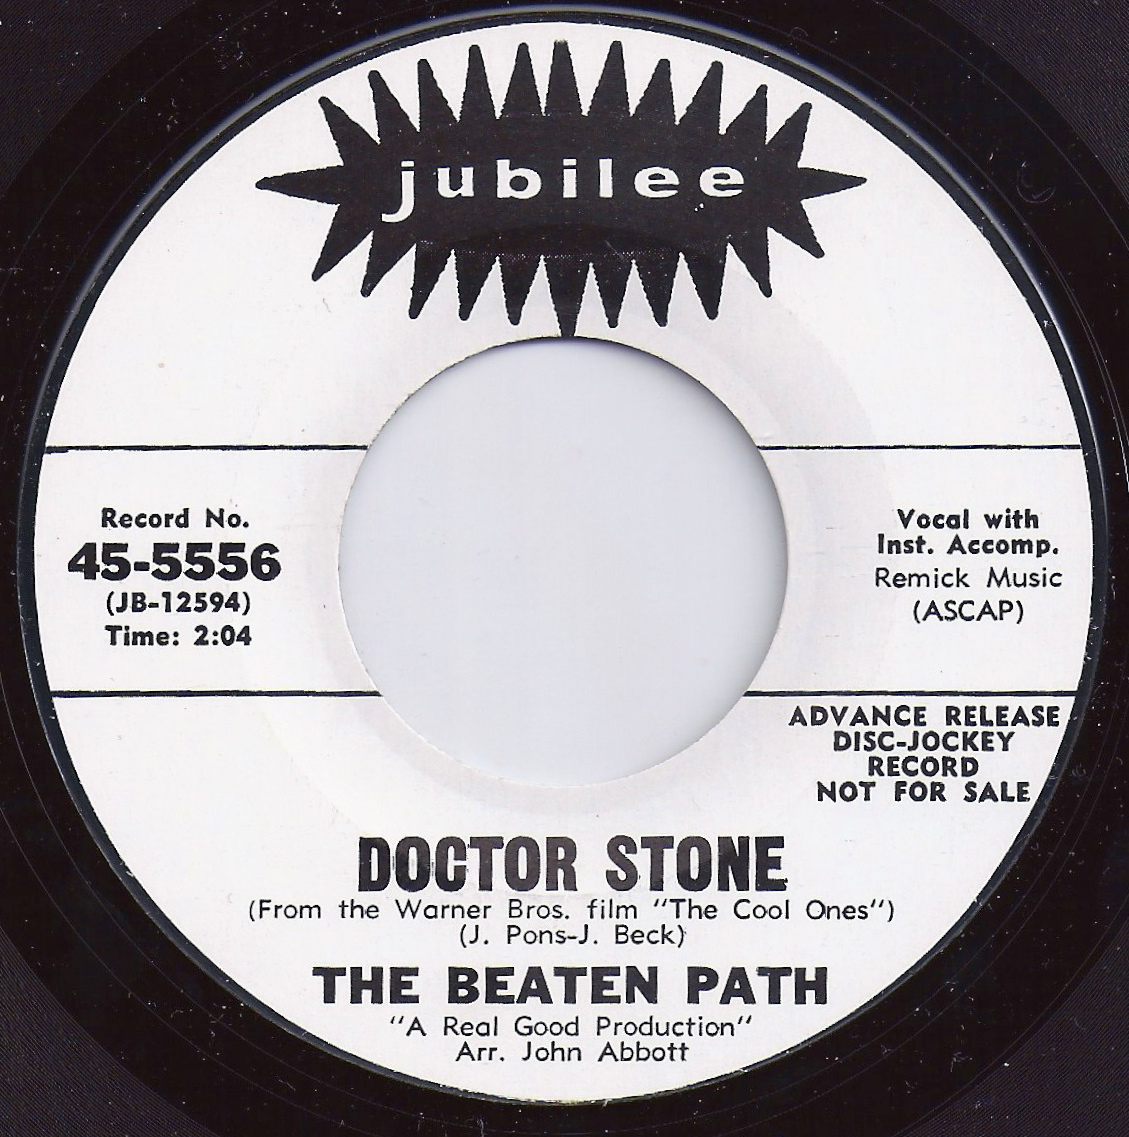 Never stone. Пластинка доктор Стоун. Музыкальная пластинка доктор Стоун. Get off the beaten Path.